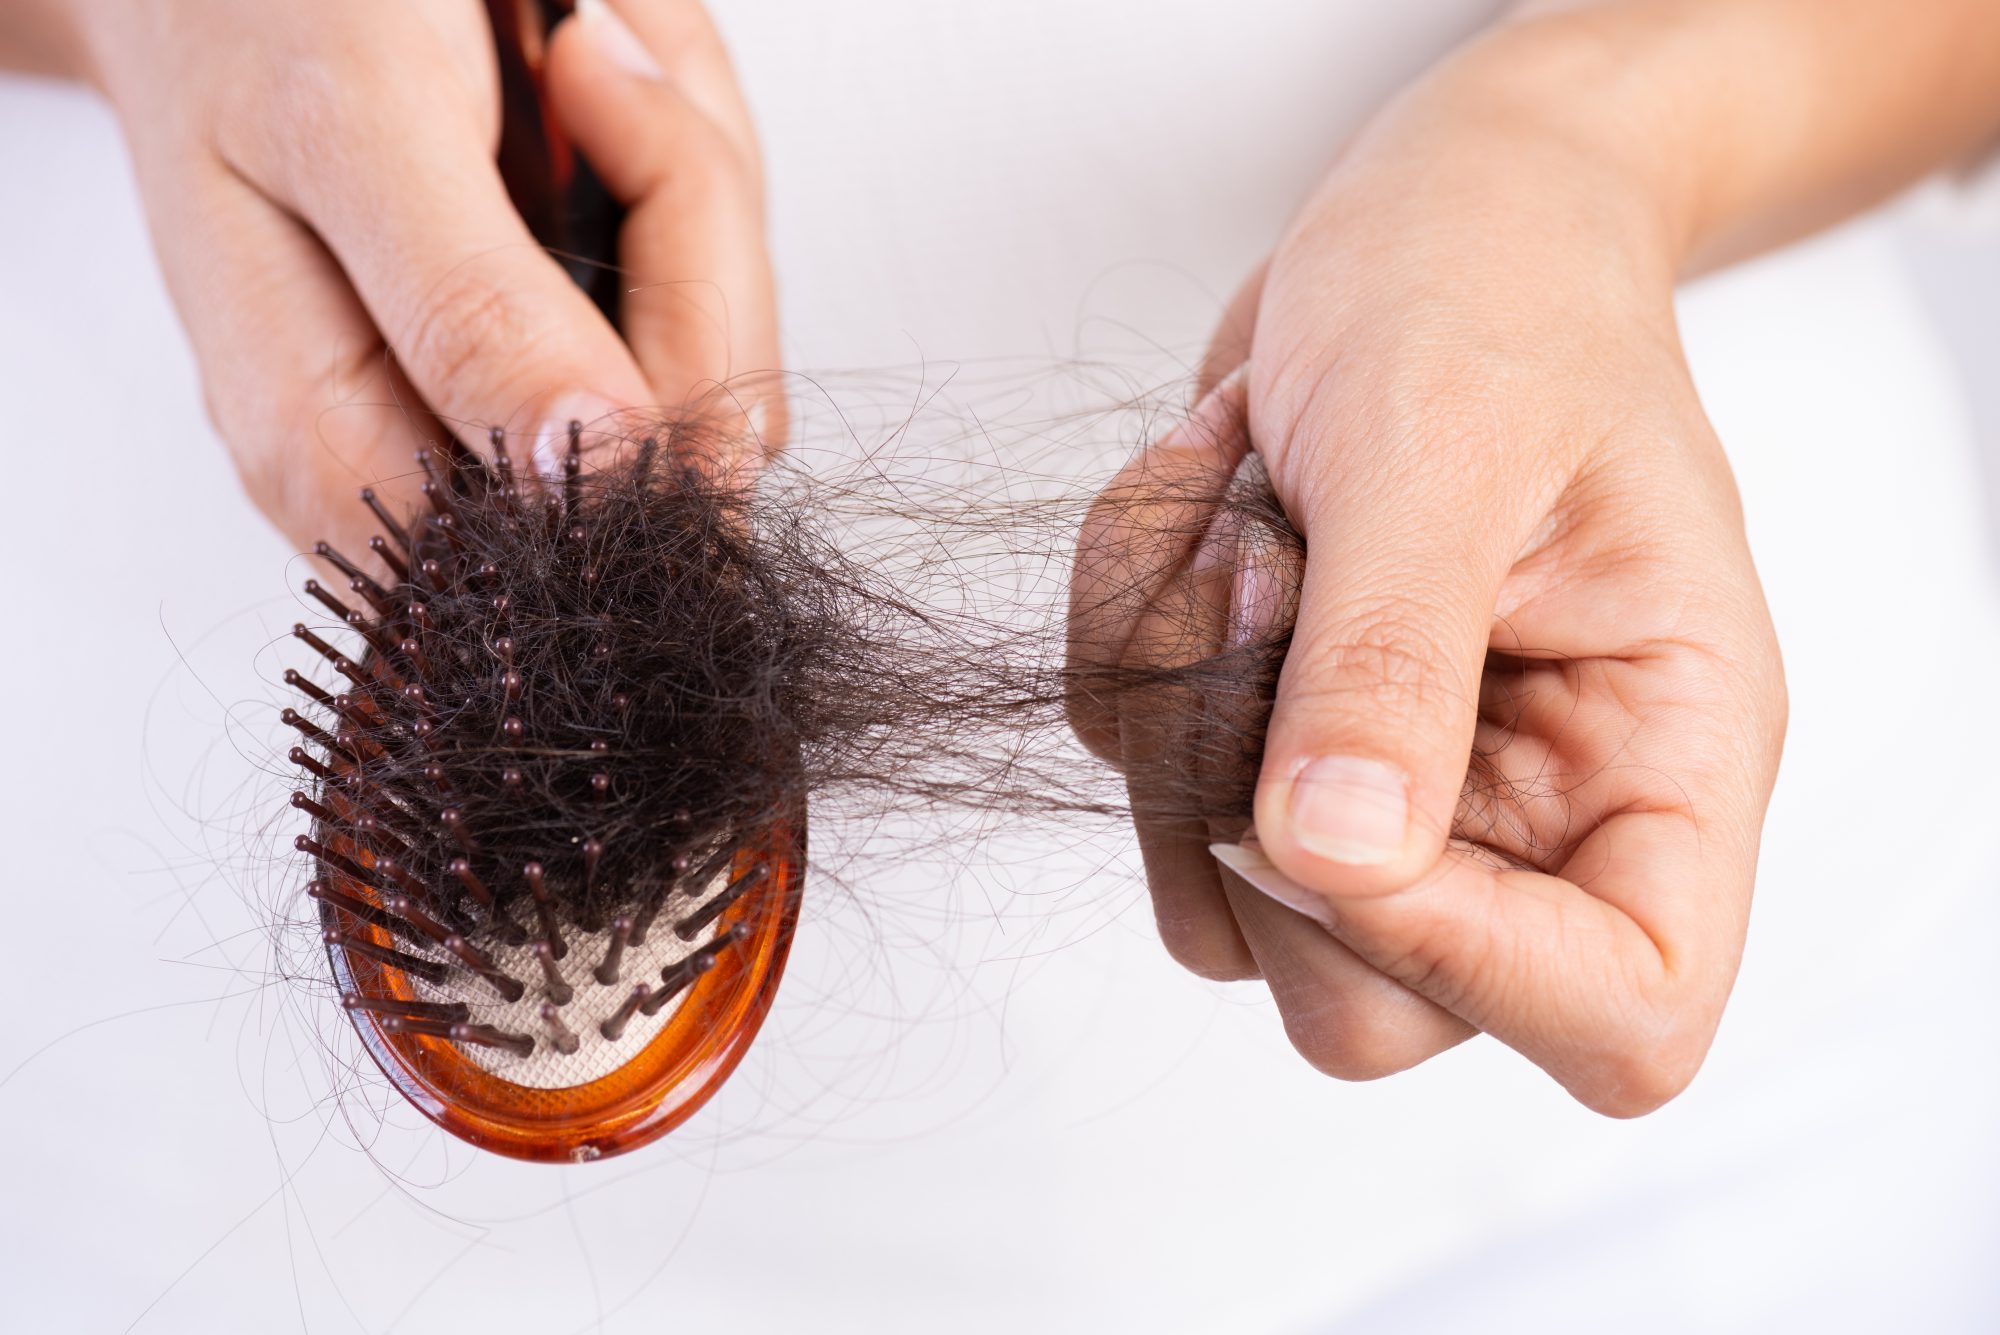 نقش بیماری ها در ریزش مو چیست و چگونه درمان می شود؟